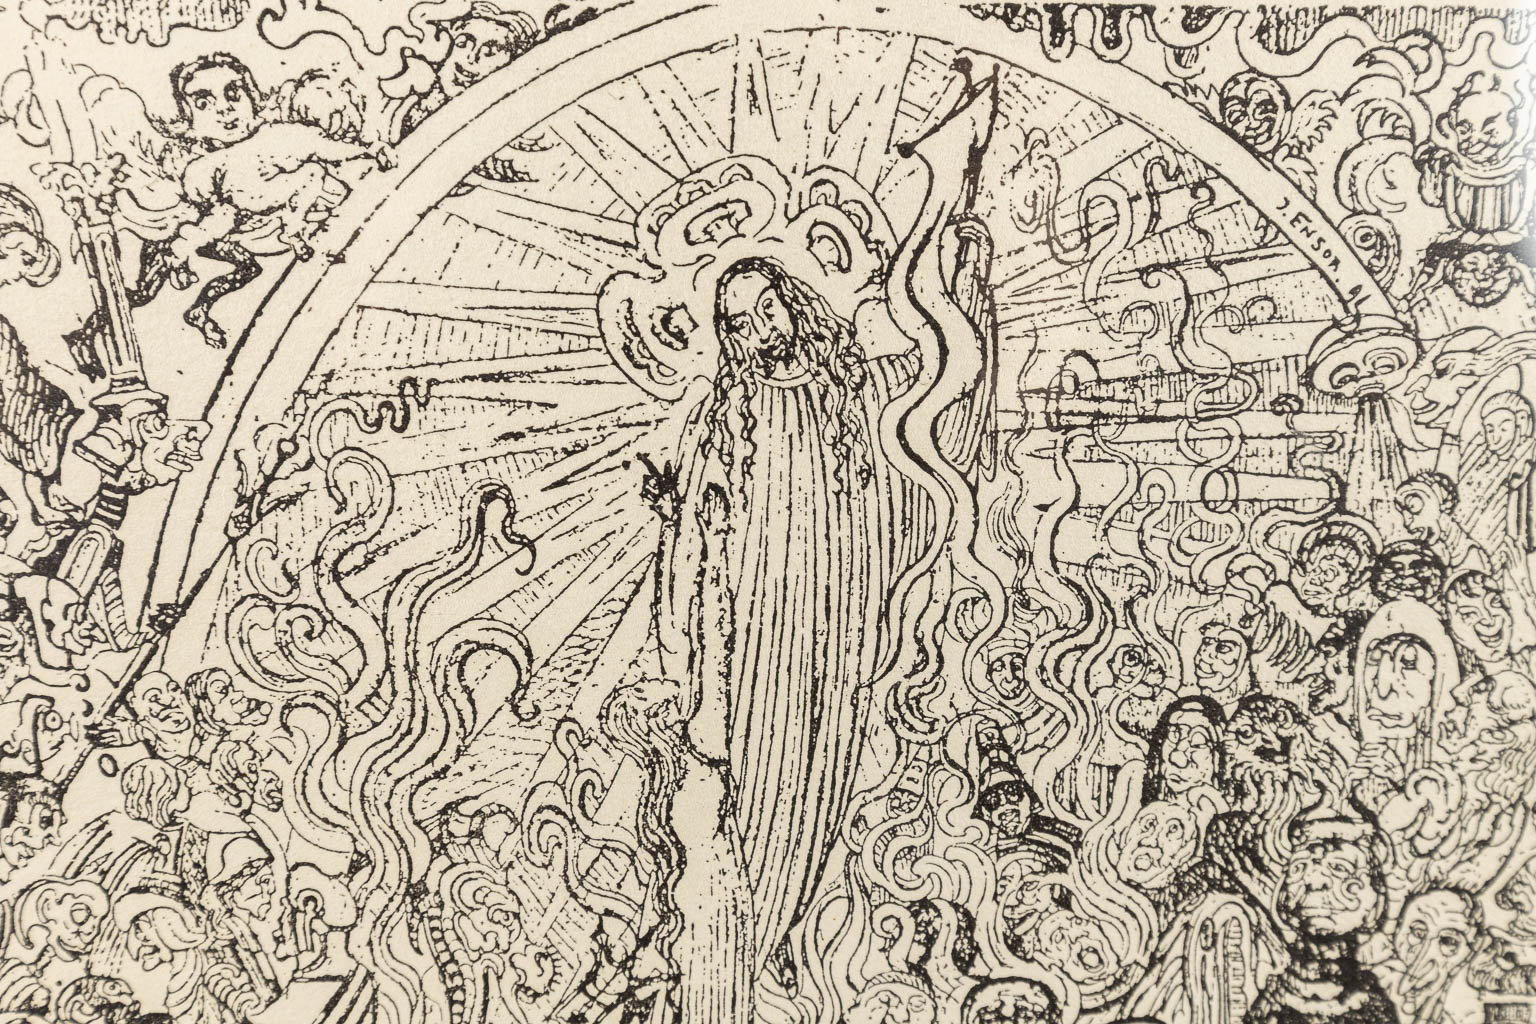 After James ENSOR (1860-1949) 'Le Christ Aux Enfers' a lithograph, 122/500. (23 x 18 cm)